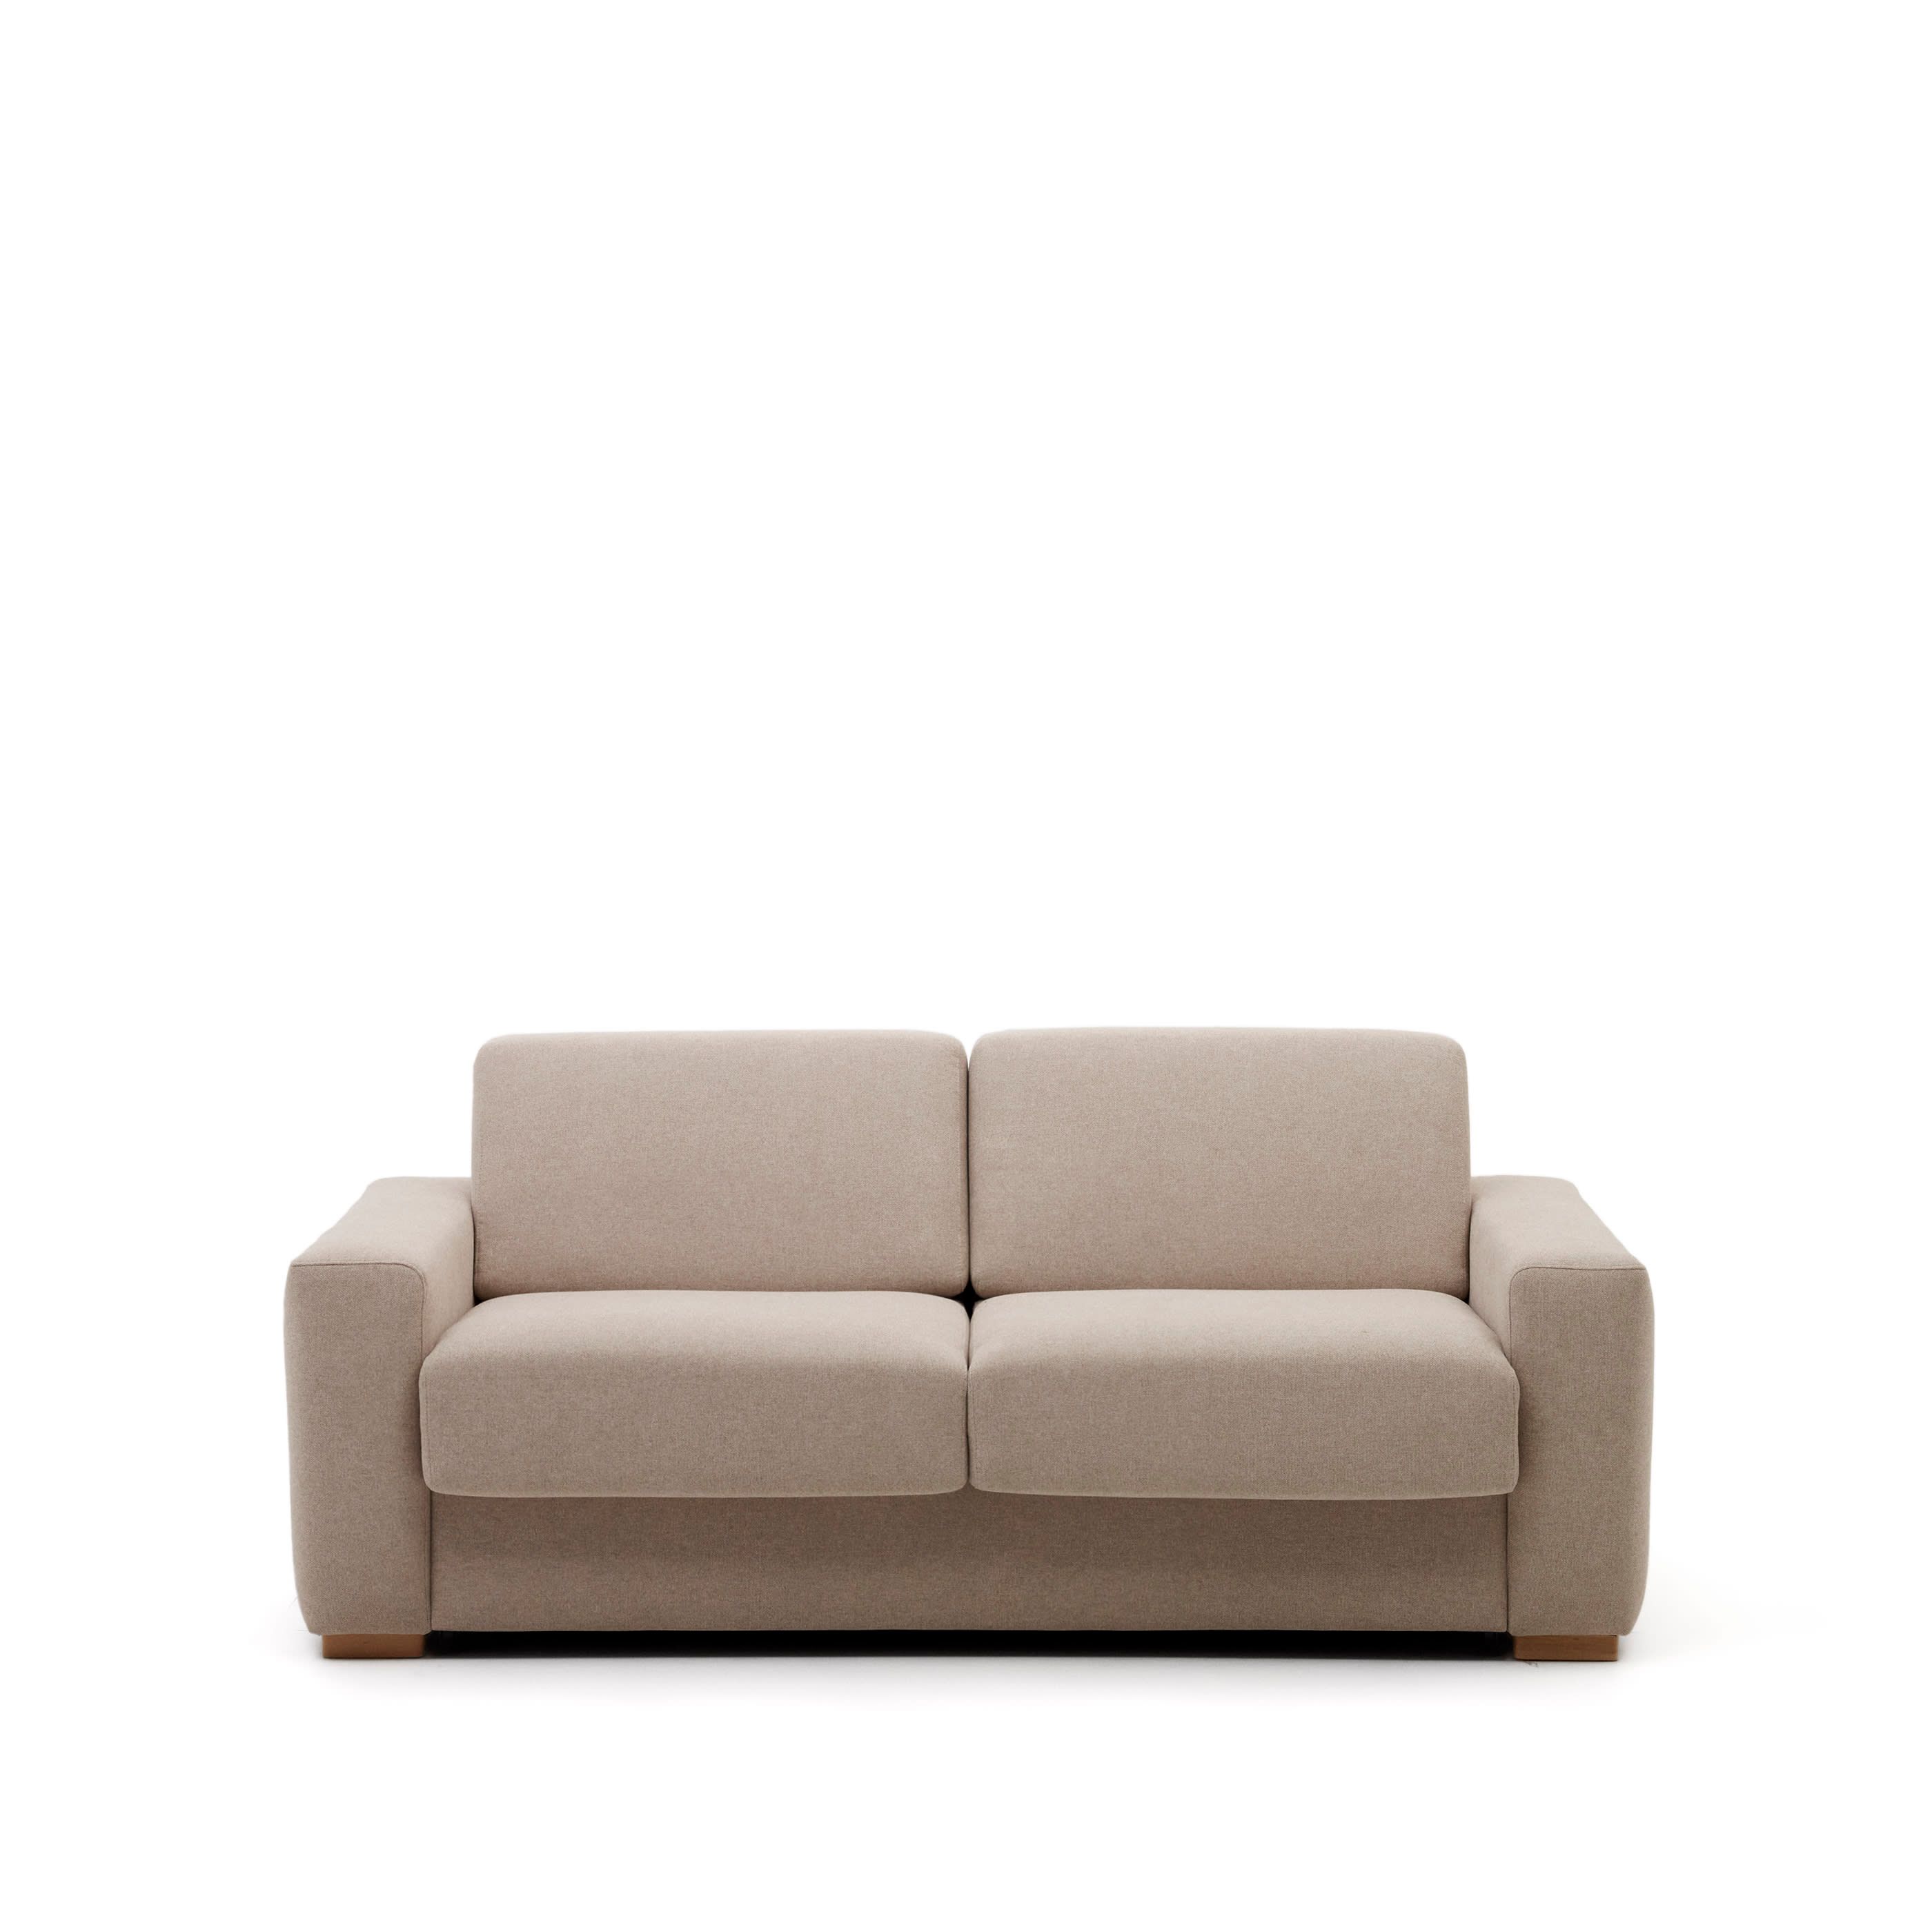 Anley 3-местный диван-кровать бежевого цвета 204 см Anley